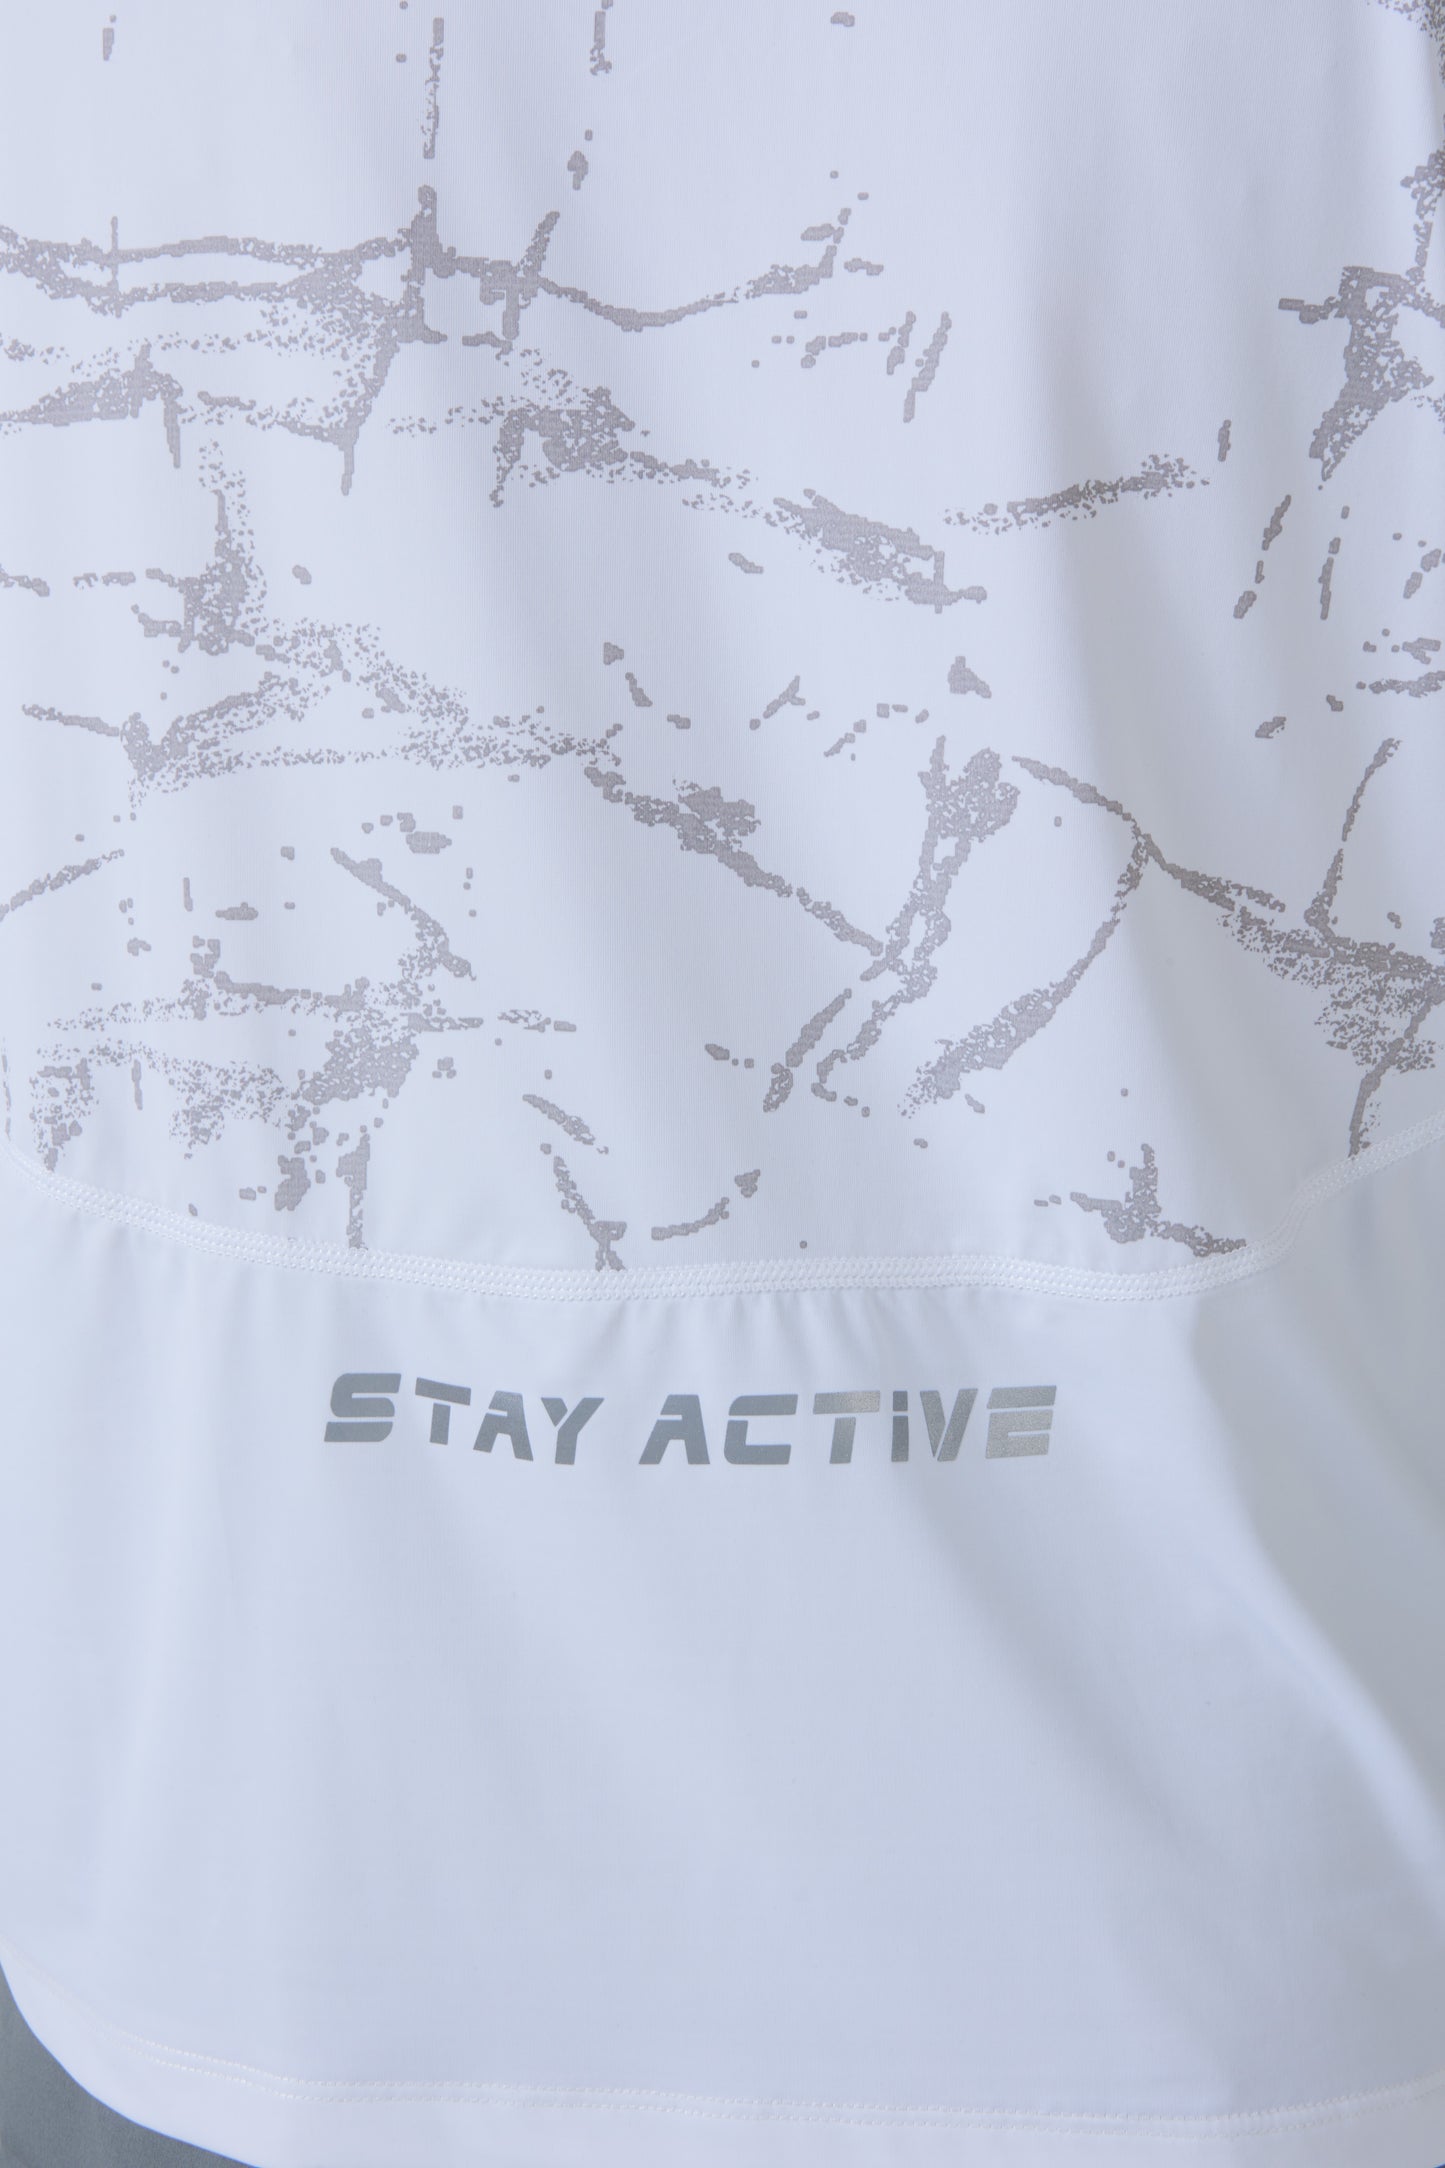 Sport T-shirt White